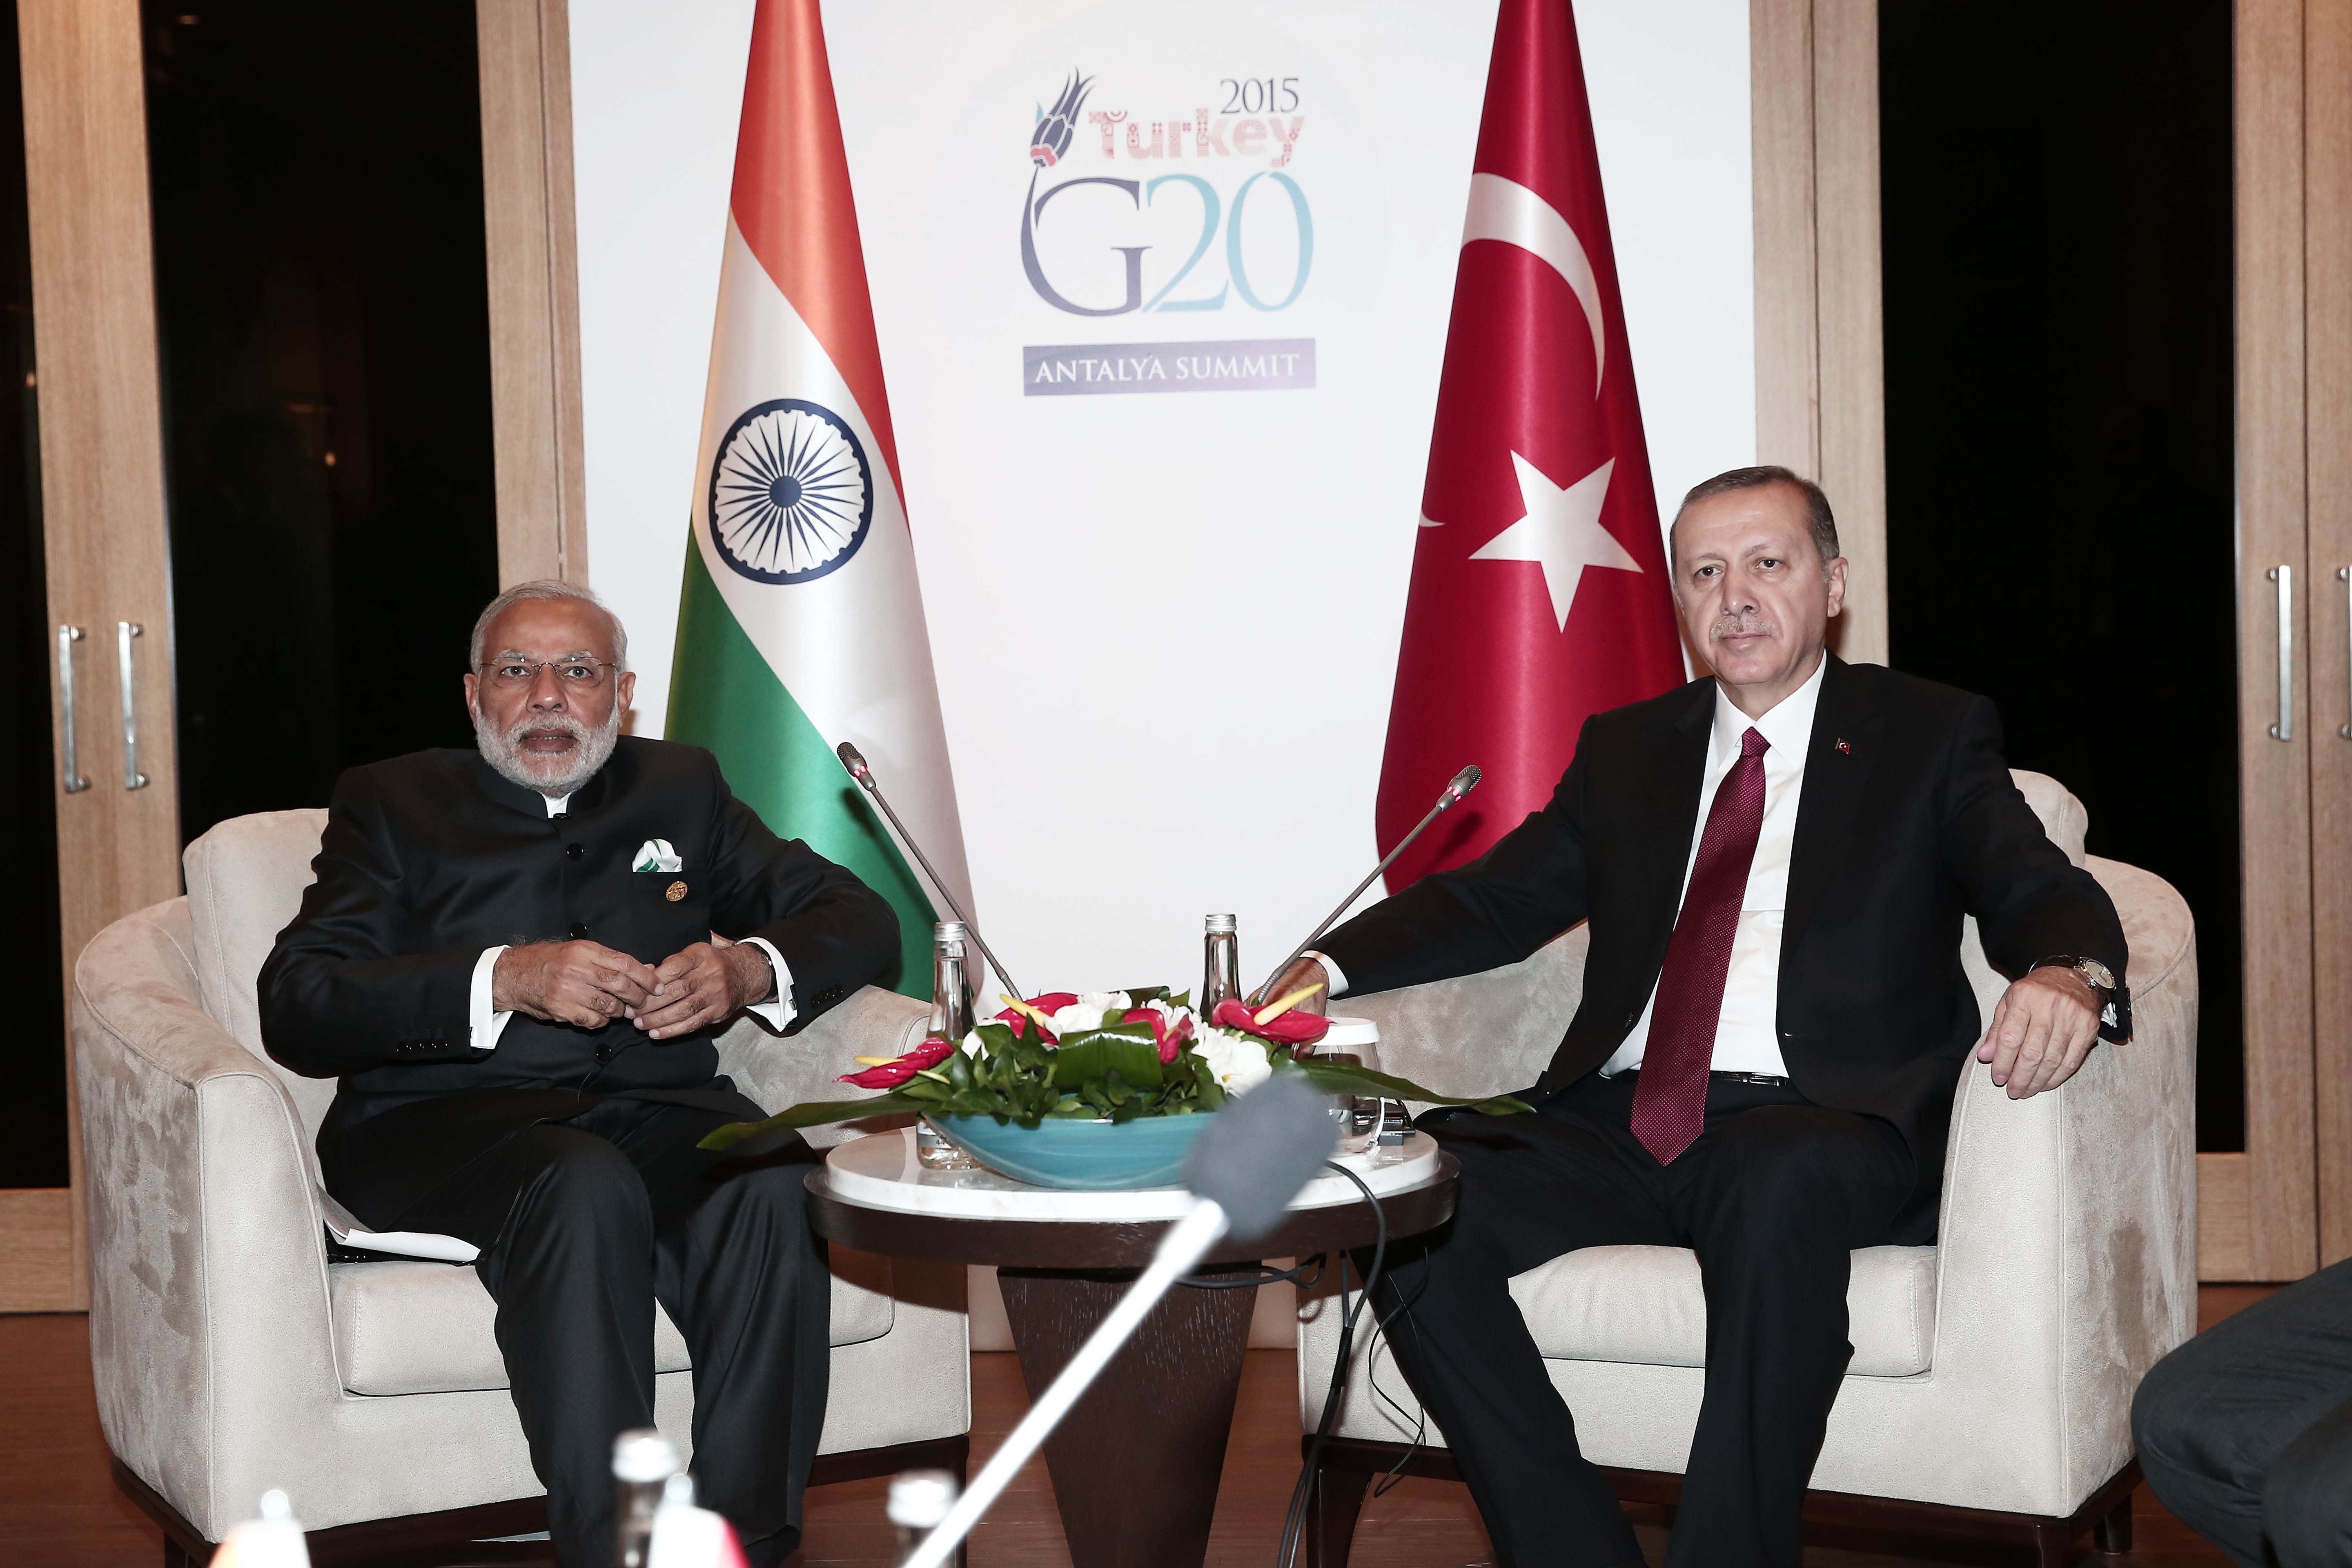 Is Turkey India's friend?